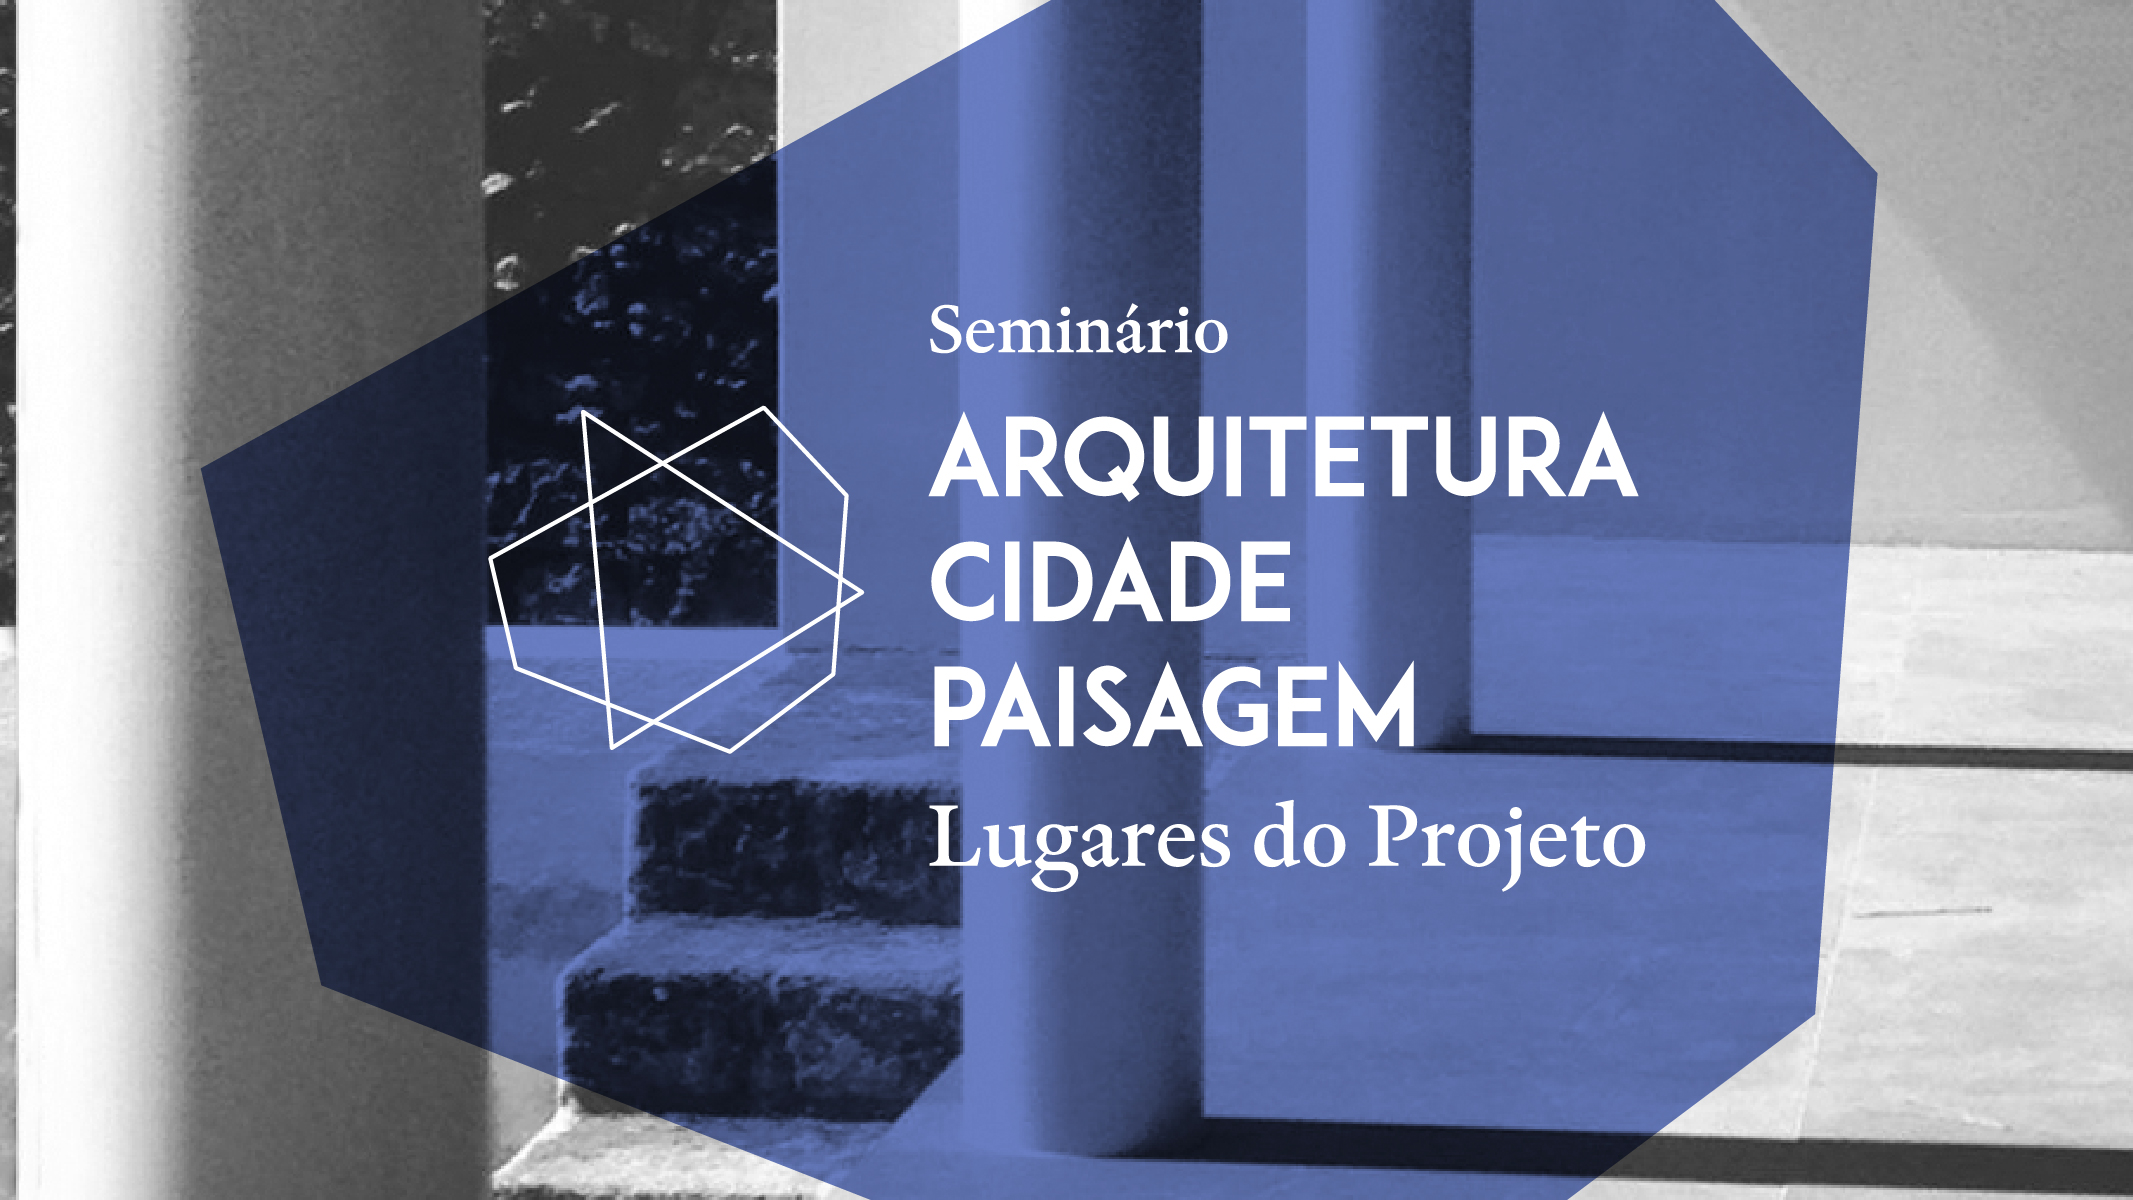 Seminário “Arquitetura, Cidade, Paisagem: Lugares do Projeto”